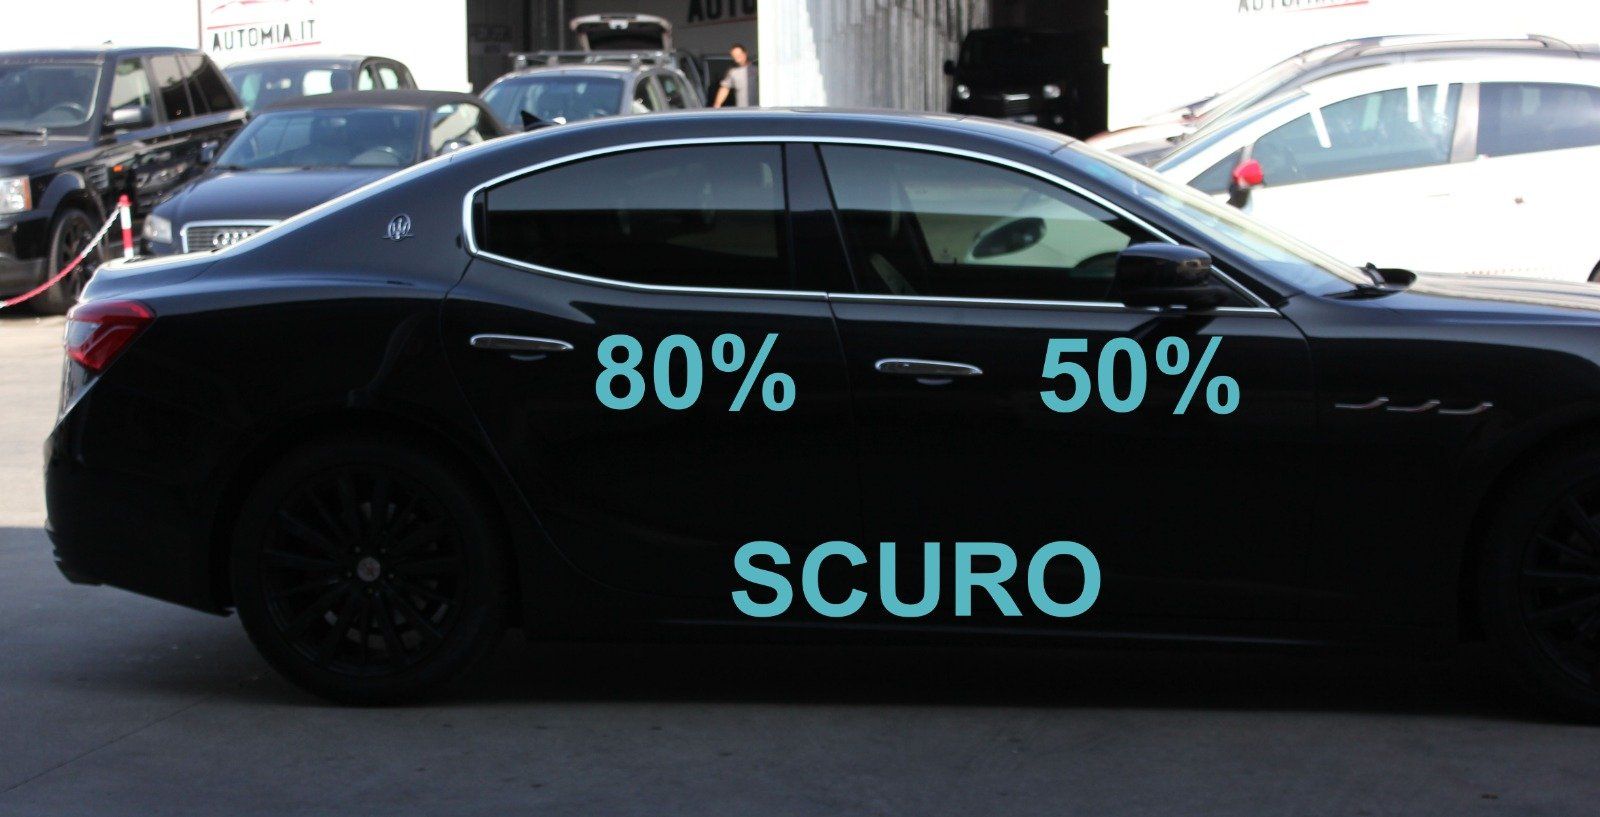 Gradazione  tonalità oscuramento vetri auto con pellicole oscuranti al 80% scuro Maserati Ghibli